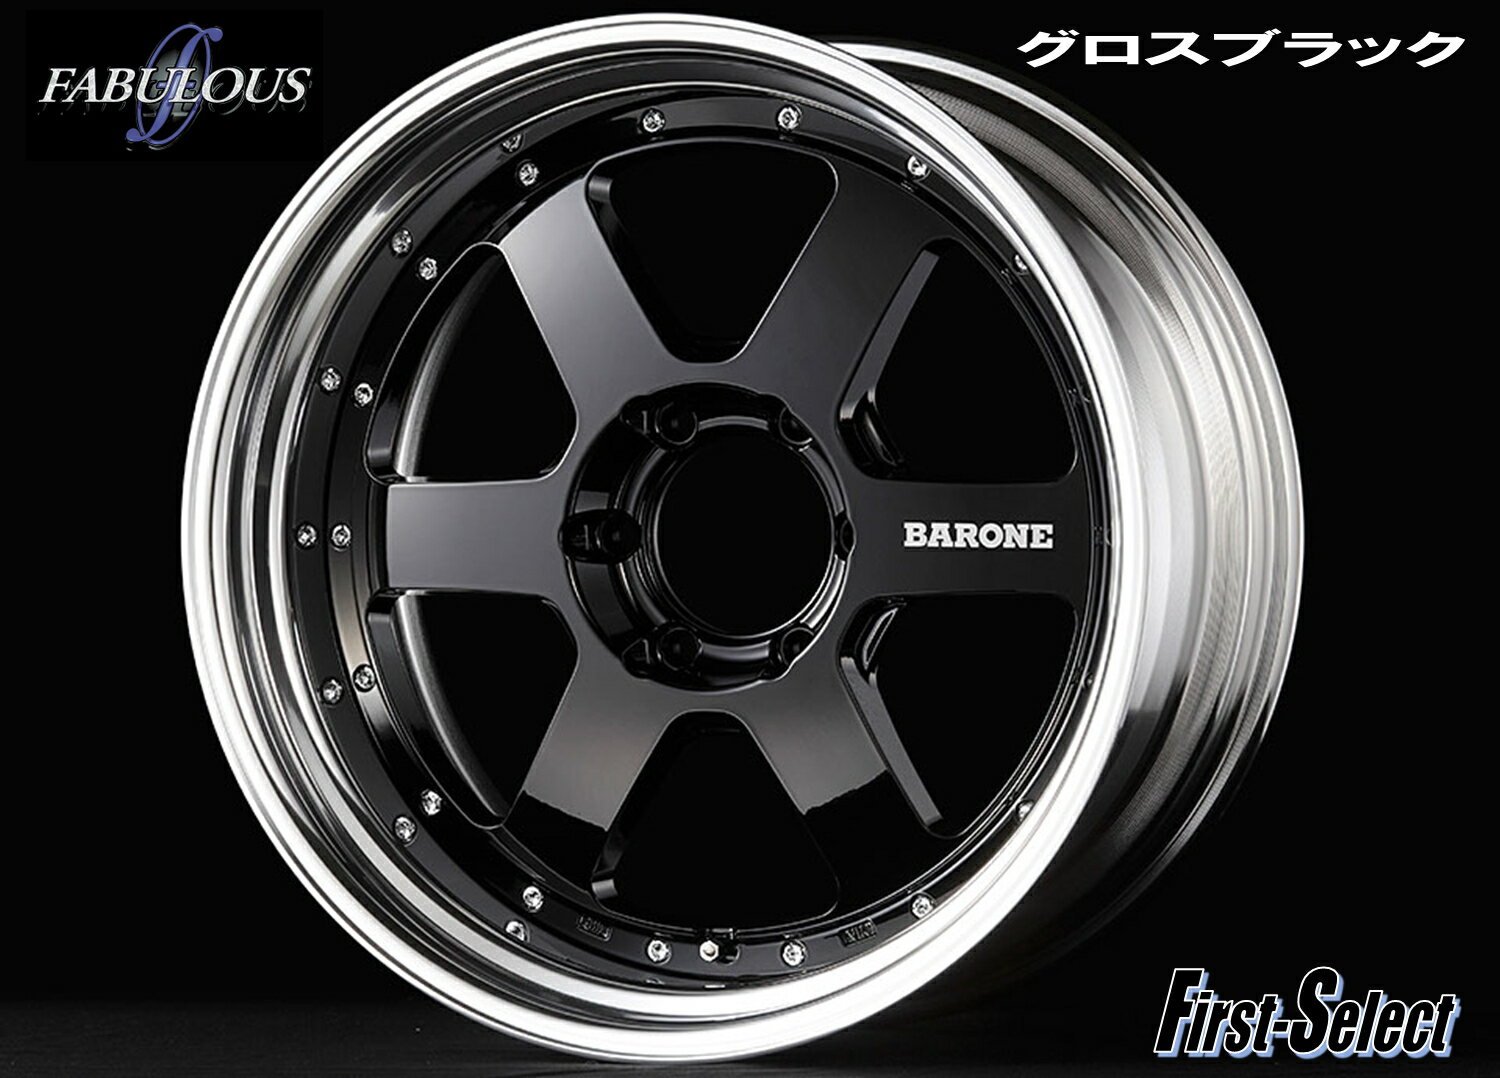 200系 ハイエース 深リム カスタムサイズFABULOUS BARONE RS-6 2Pグロスブラック18×9.0J 6H139.7+25特選輸入タイヤ18インチ 新品 タイヤ・ホイール